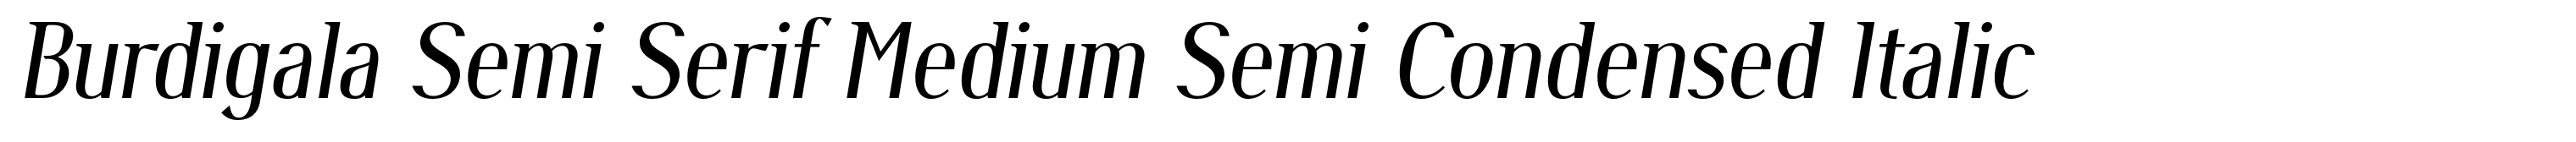 Burdigala Semi Serif Medium Semi Condensed Italic